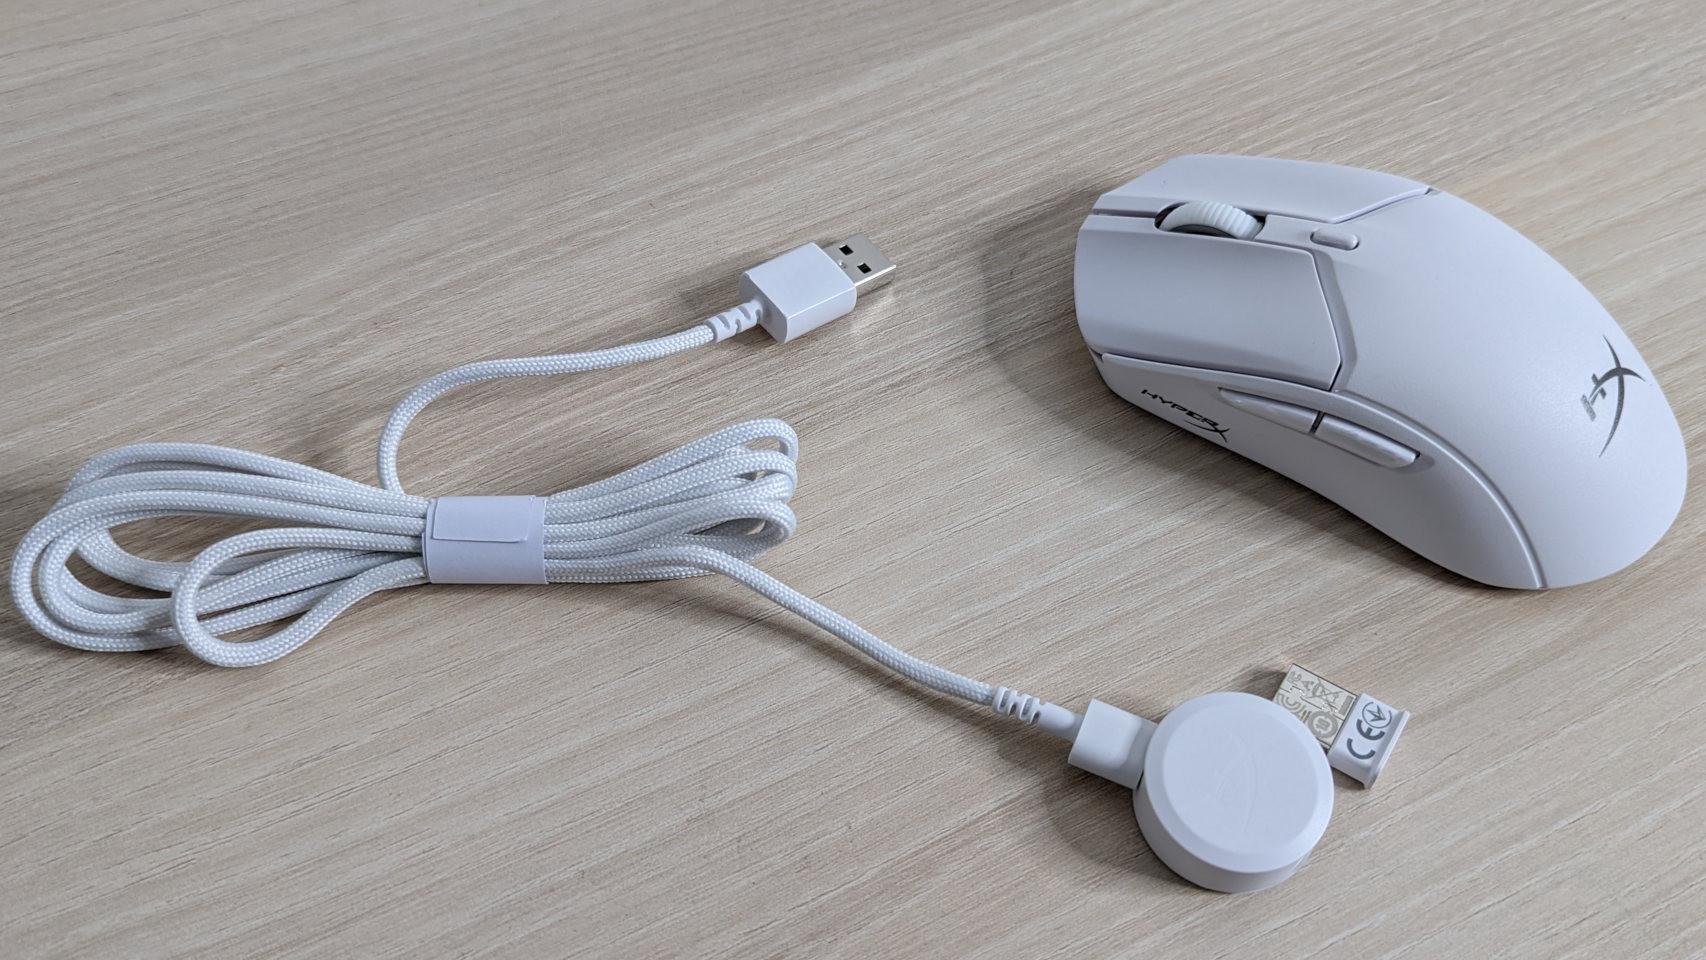 HyperX incluye un adaptador para aprovechar la velocidad de su nuevo ratón